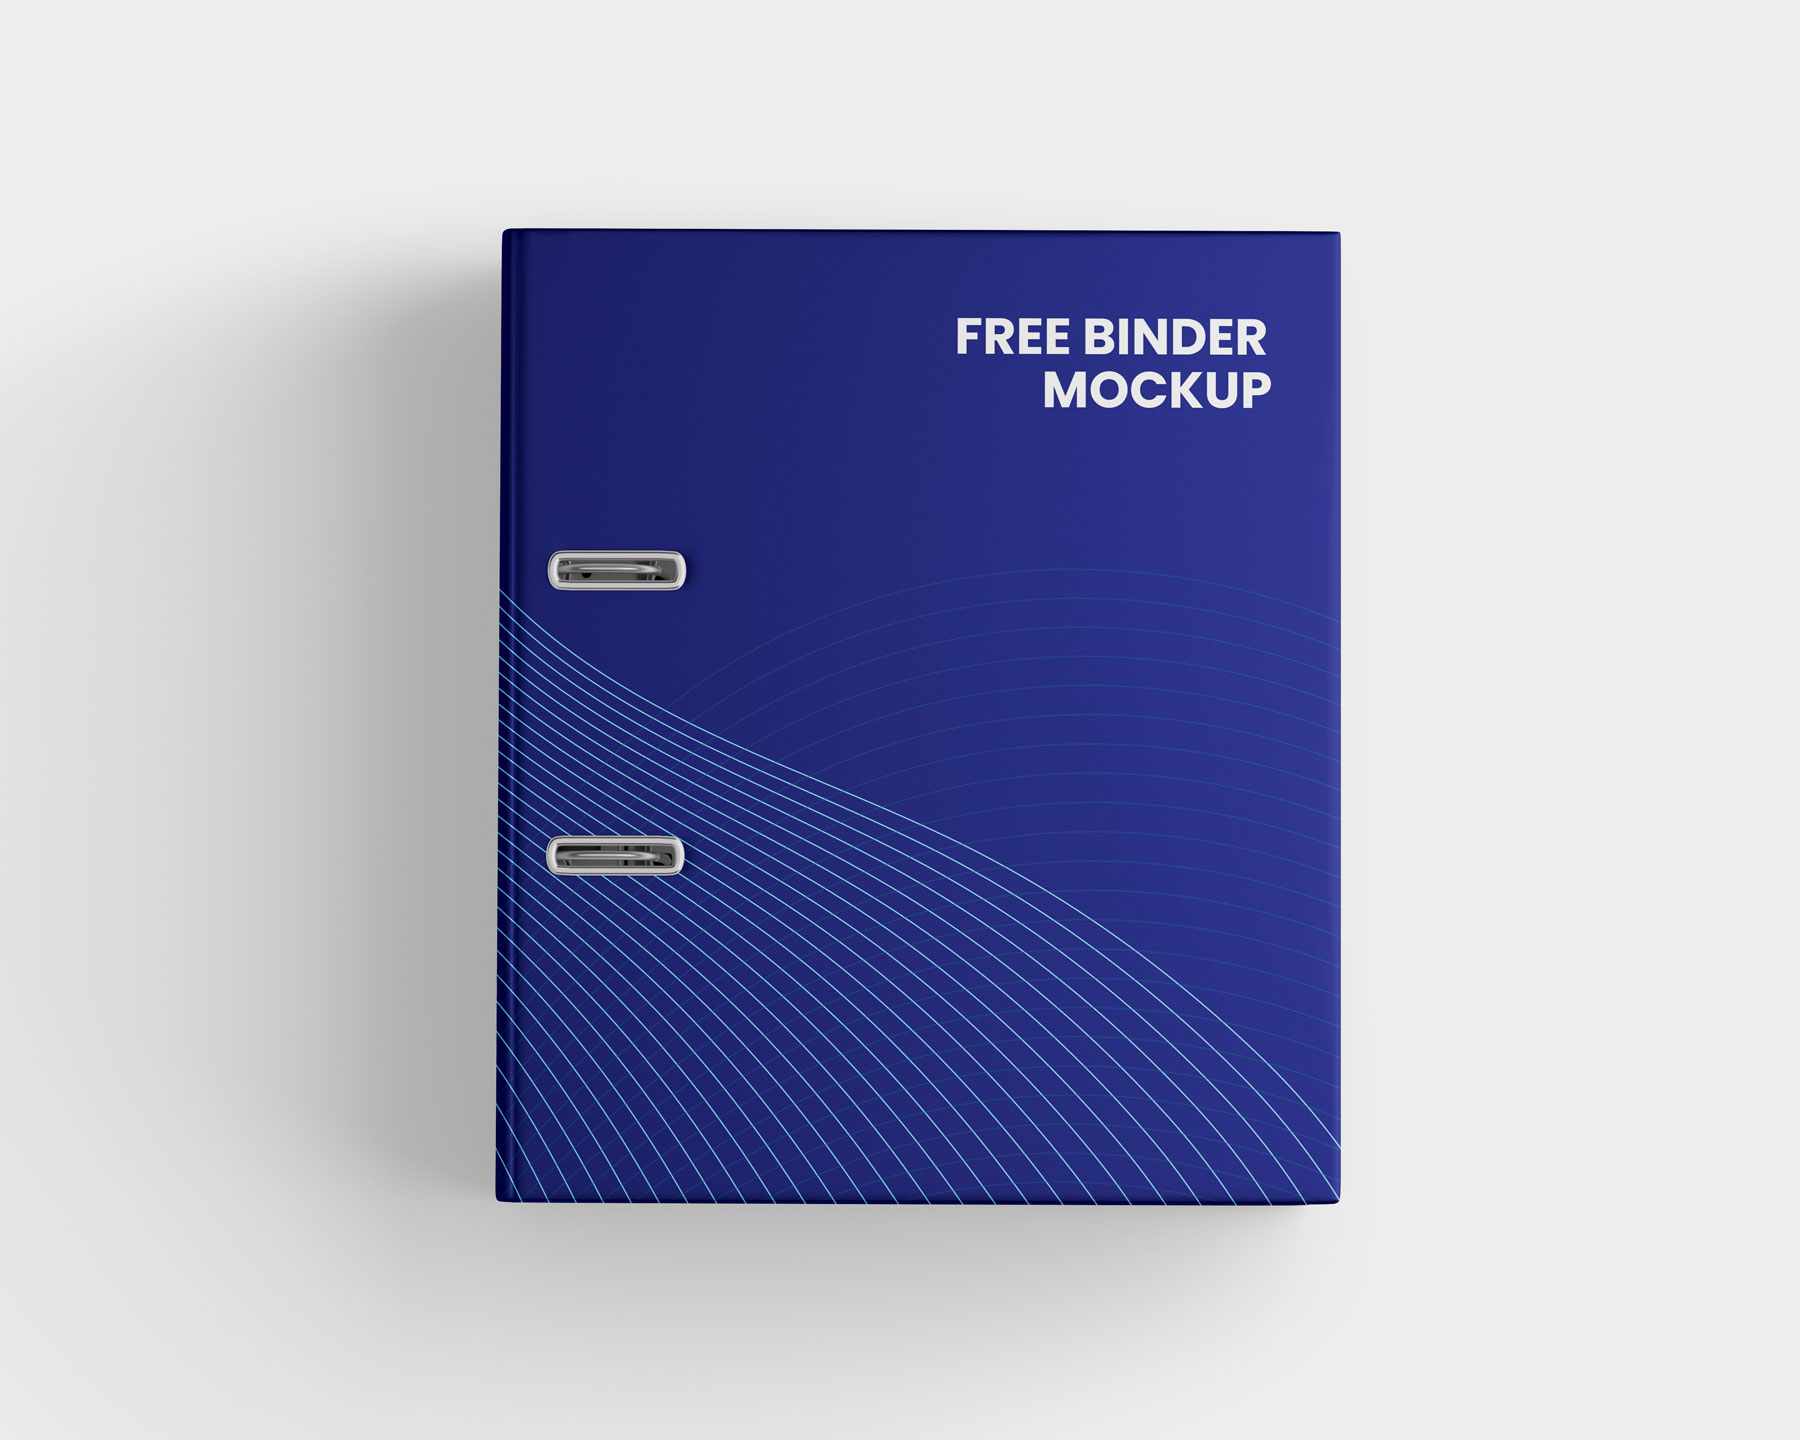 Free Ring Binder Mockup PSD Set